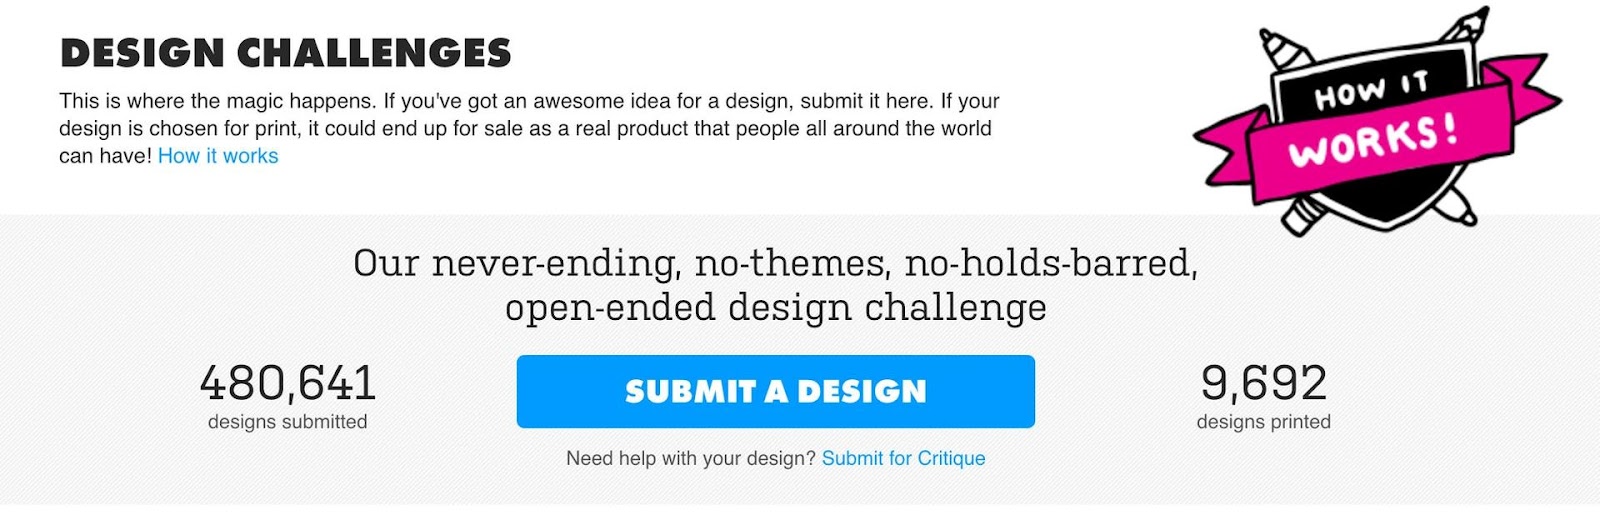 Threadless Design Challenge